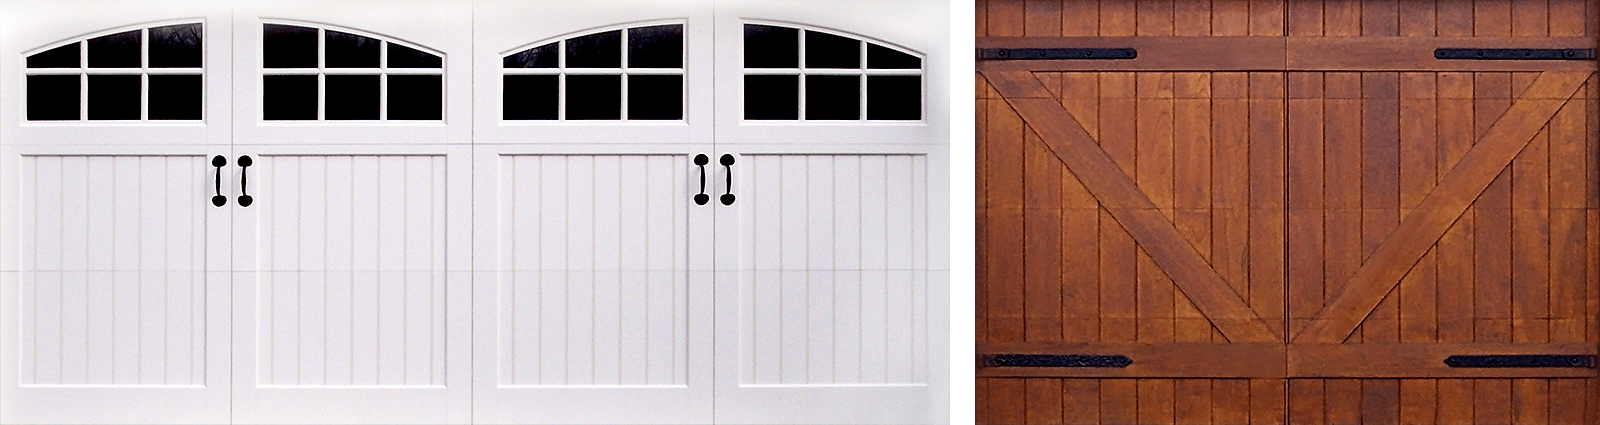 Garage Door Decorative Hardware, Modern Magnetic Garage Door Hardware